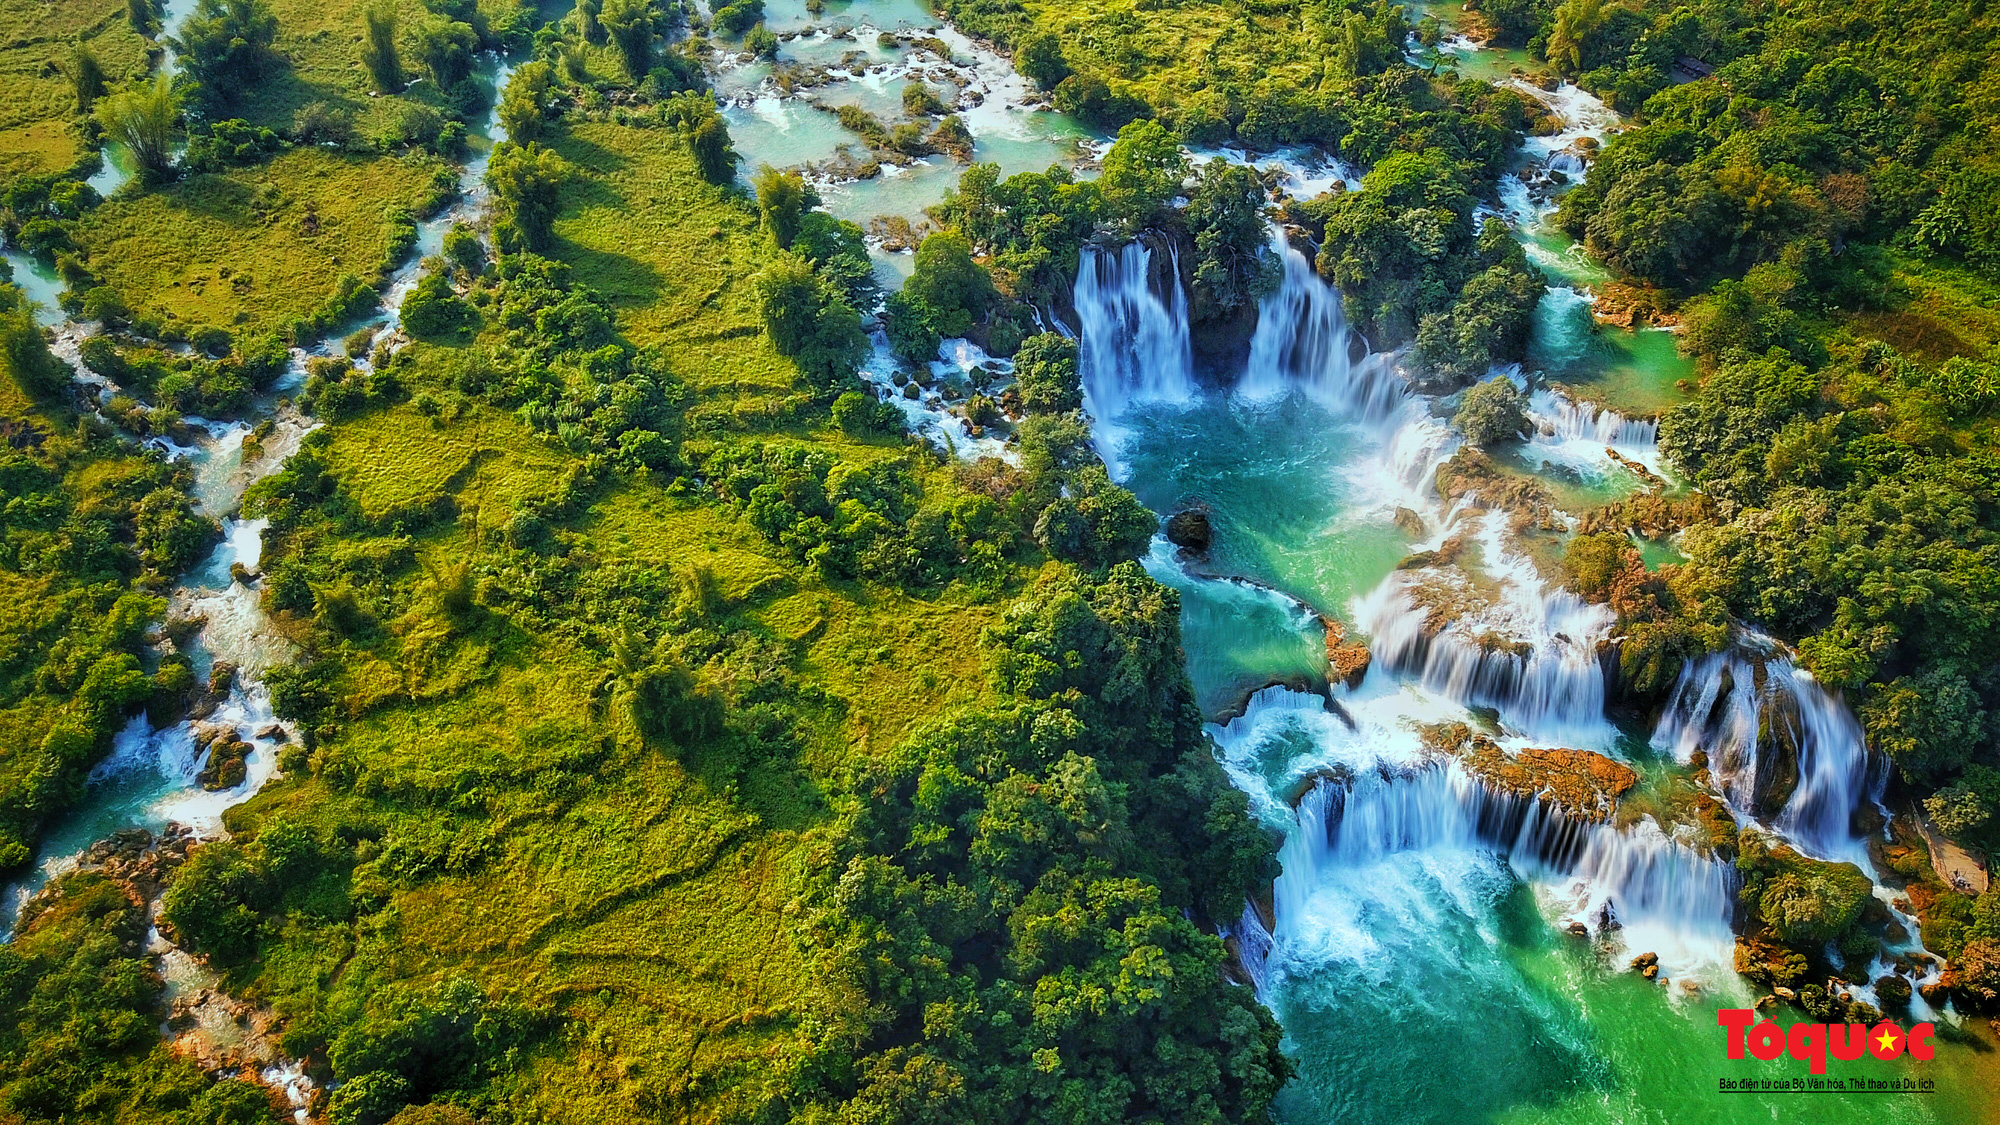 Thác Bản Giốc là một trong những cơn thác đẹp nhất Việt Nam, và chắc chắn sẽ để lại dấu ấn đẹp nhất trong lòng bạn. Hãy khám phá những hình ảnh đẹp tuyệt vời về thác nước tuyệt đẹp này.